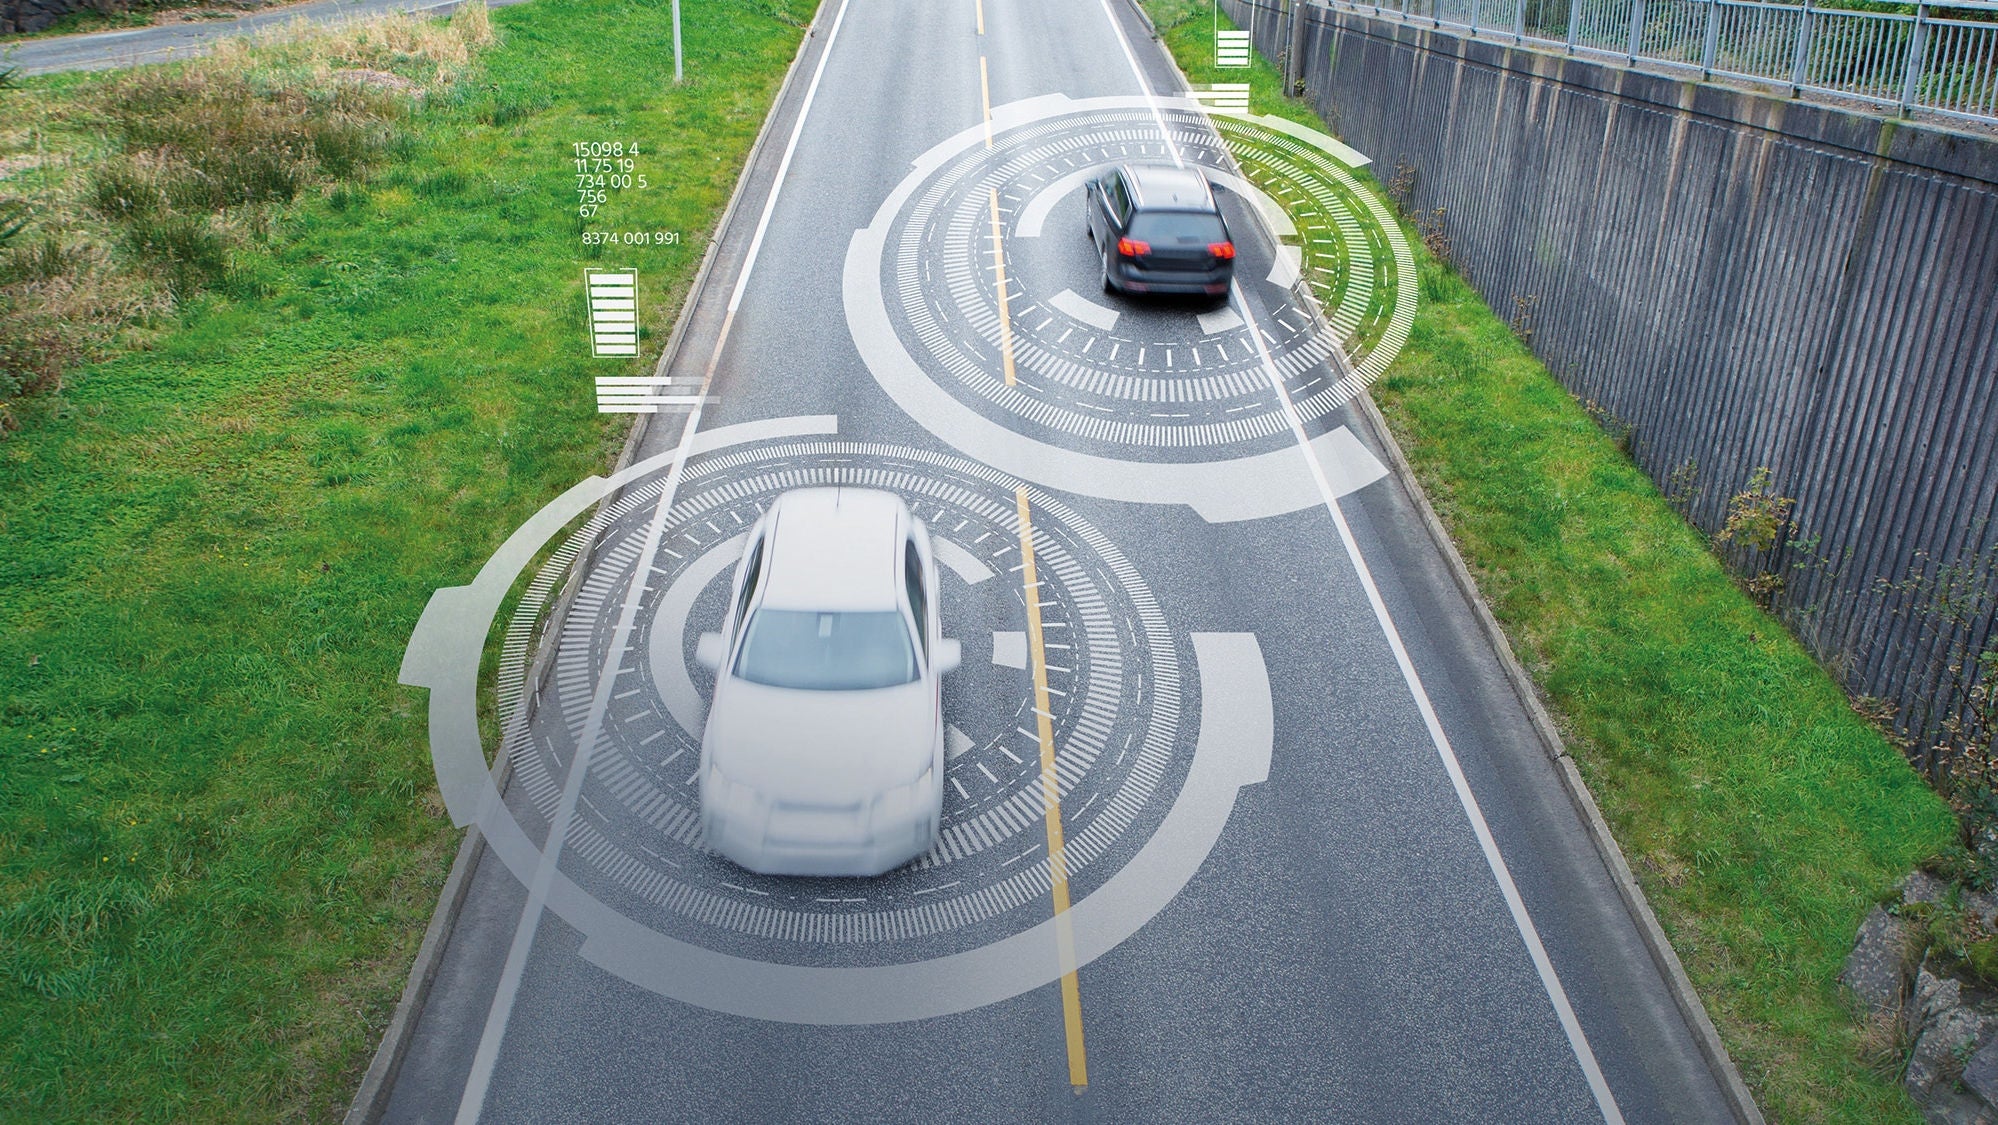 Ansicht aus der Vogelperspektive auf eine Straße mit Autos, die von illustrierten Kreisen, die eine Art Steuerung darstellen, umgeben sind